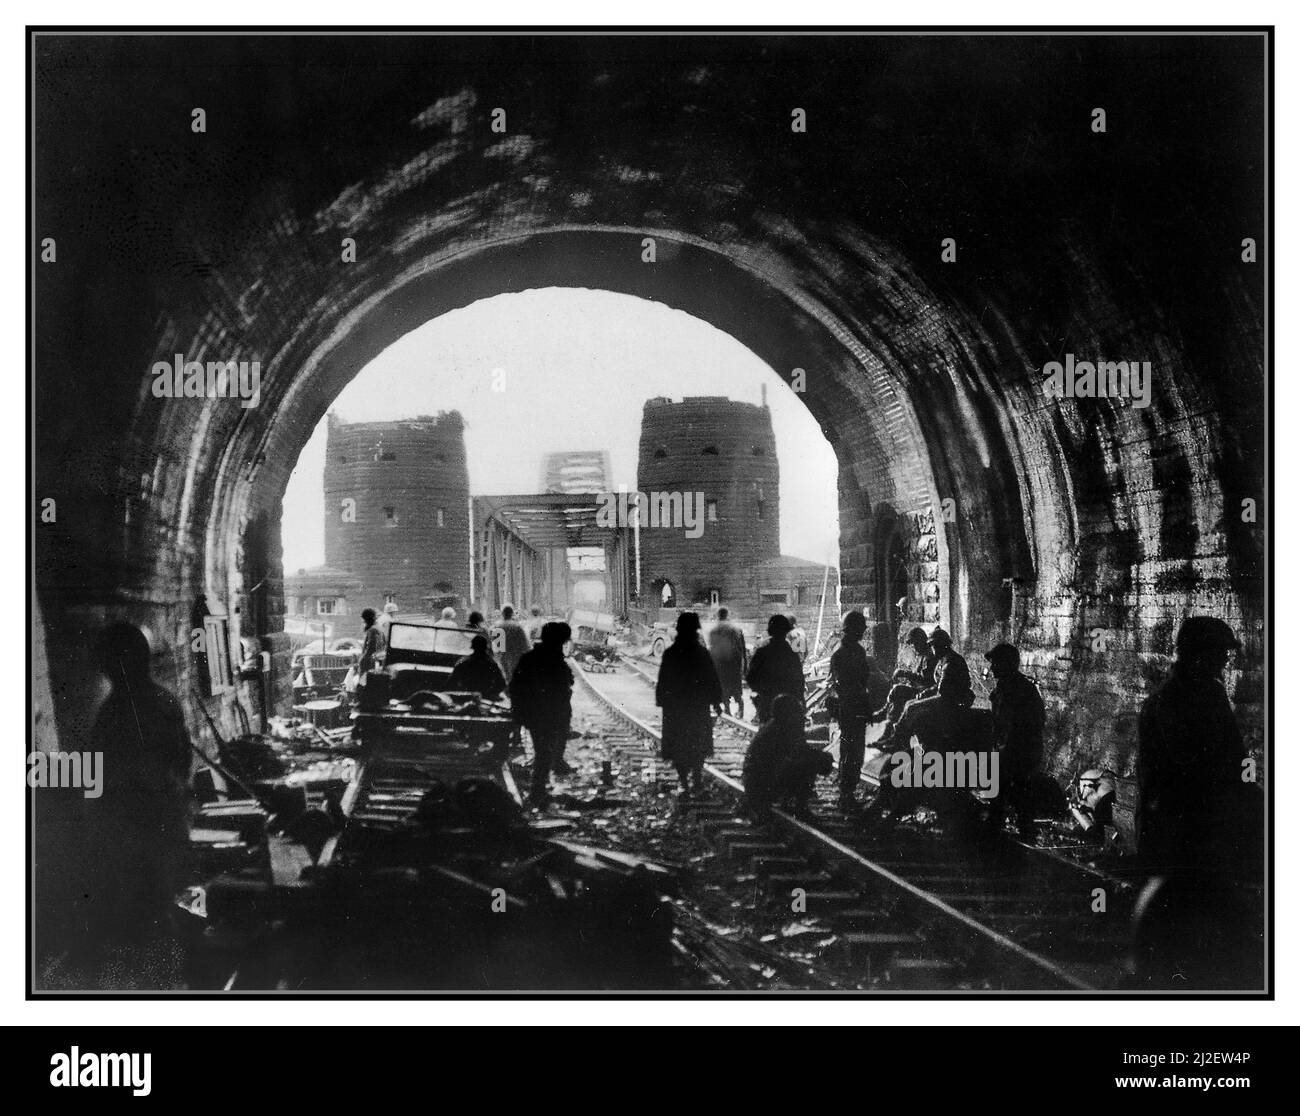 EL PUENTE EN REMAGEN Primera Ejército de EE.UU. Hombres y equipo de verter a través del puente Remagen; El puente Ludendorff en Remagen WW2 tropas de la División de Armorados de los EE.UU. 9th, Primer Ejército, avanzan a través del puente Ludendorff intacto a la orilla este del río Rin en Remagen, Alemania, dos jeeps derribados en primer plano. Alemania. Tomado el 11 de marzo de 1945 WW2 Segunda Guerra Mundial Foto de stock